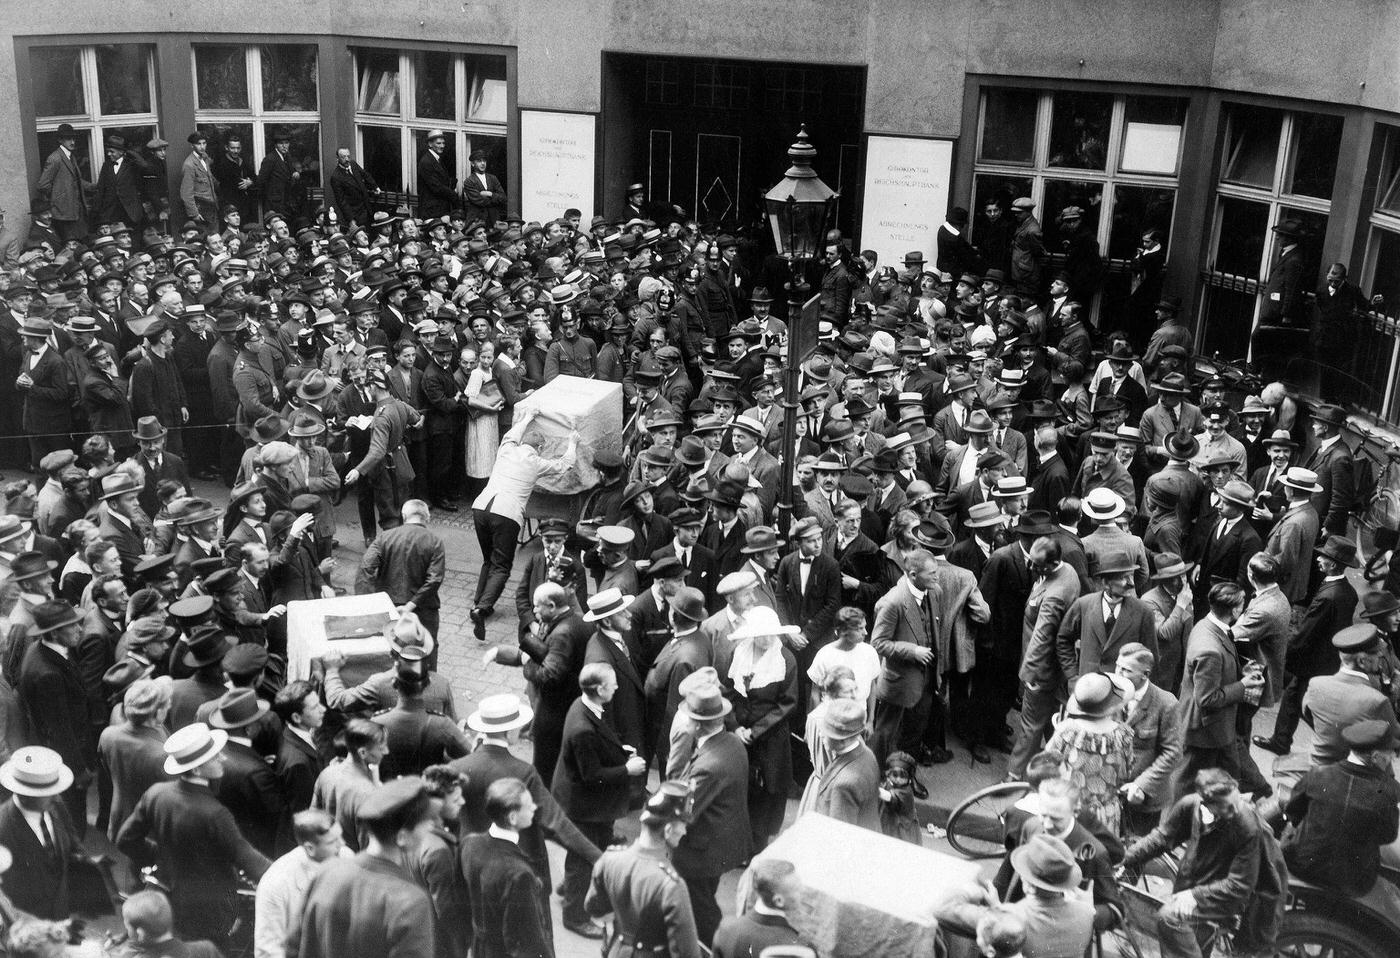 Crowds at Reichsbank during Weimar Republic's hyperinflation, 1923.